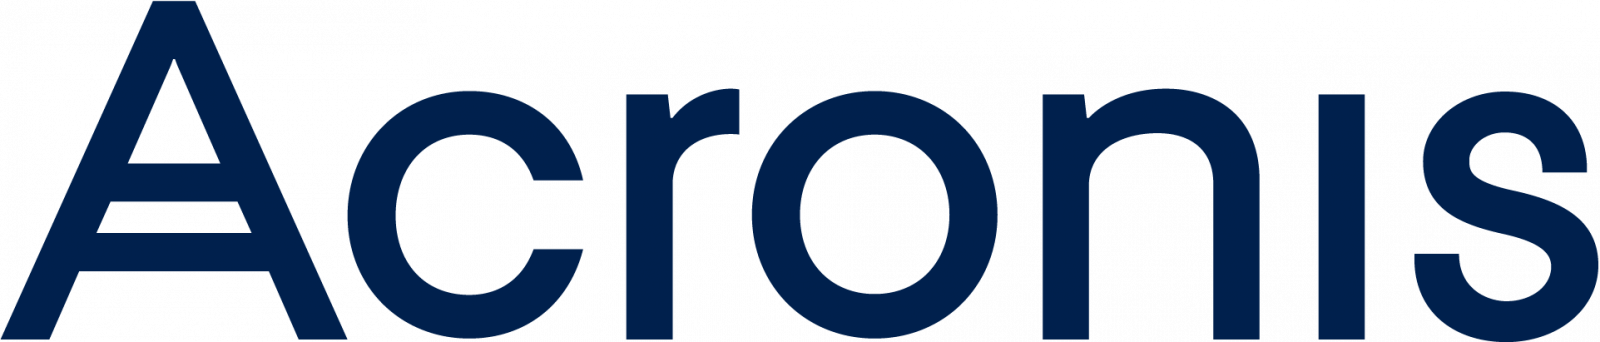 acronis-logo-large